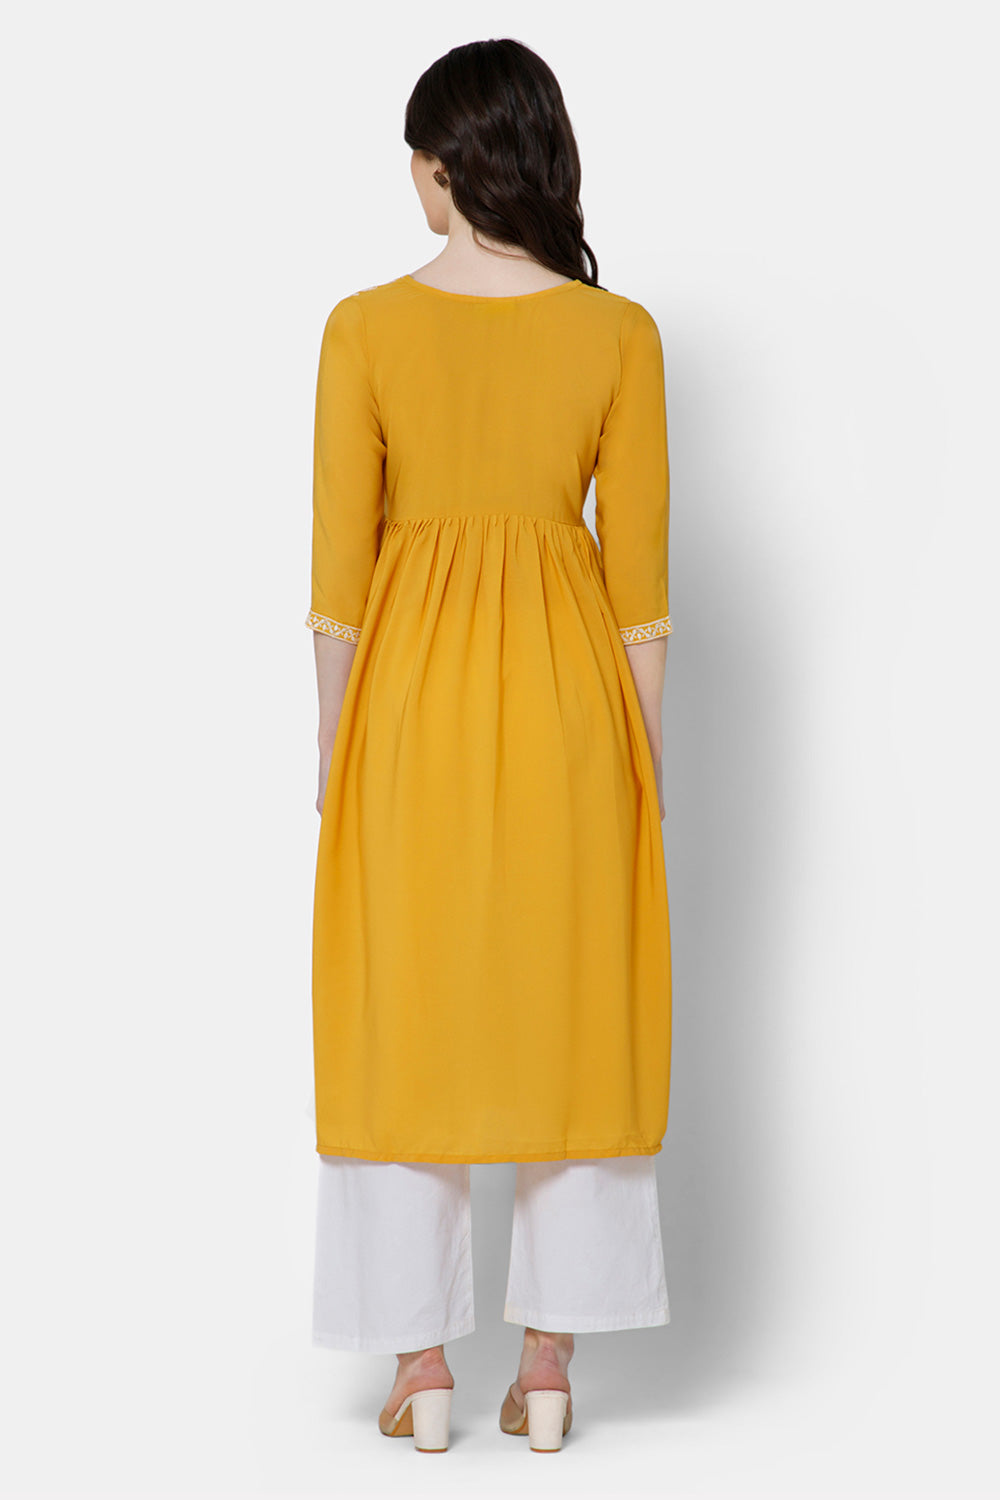 Mythri Women's Ethnic wear Kurthi with Elaborately Embroidered Front Yoke Design - Yellow - E071